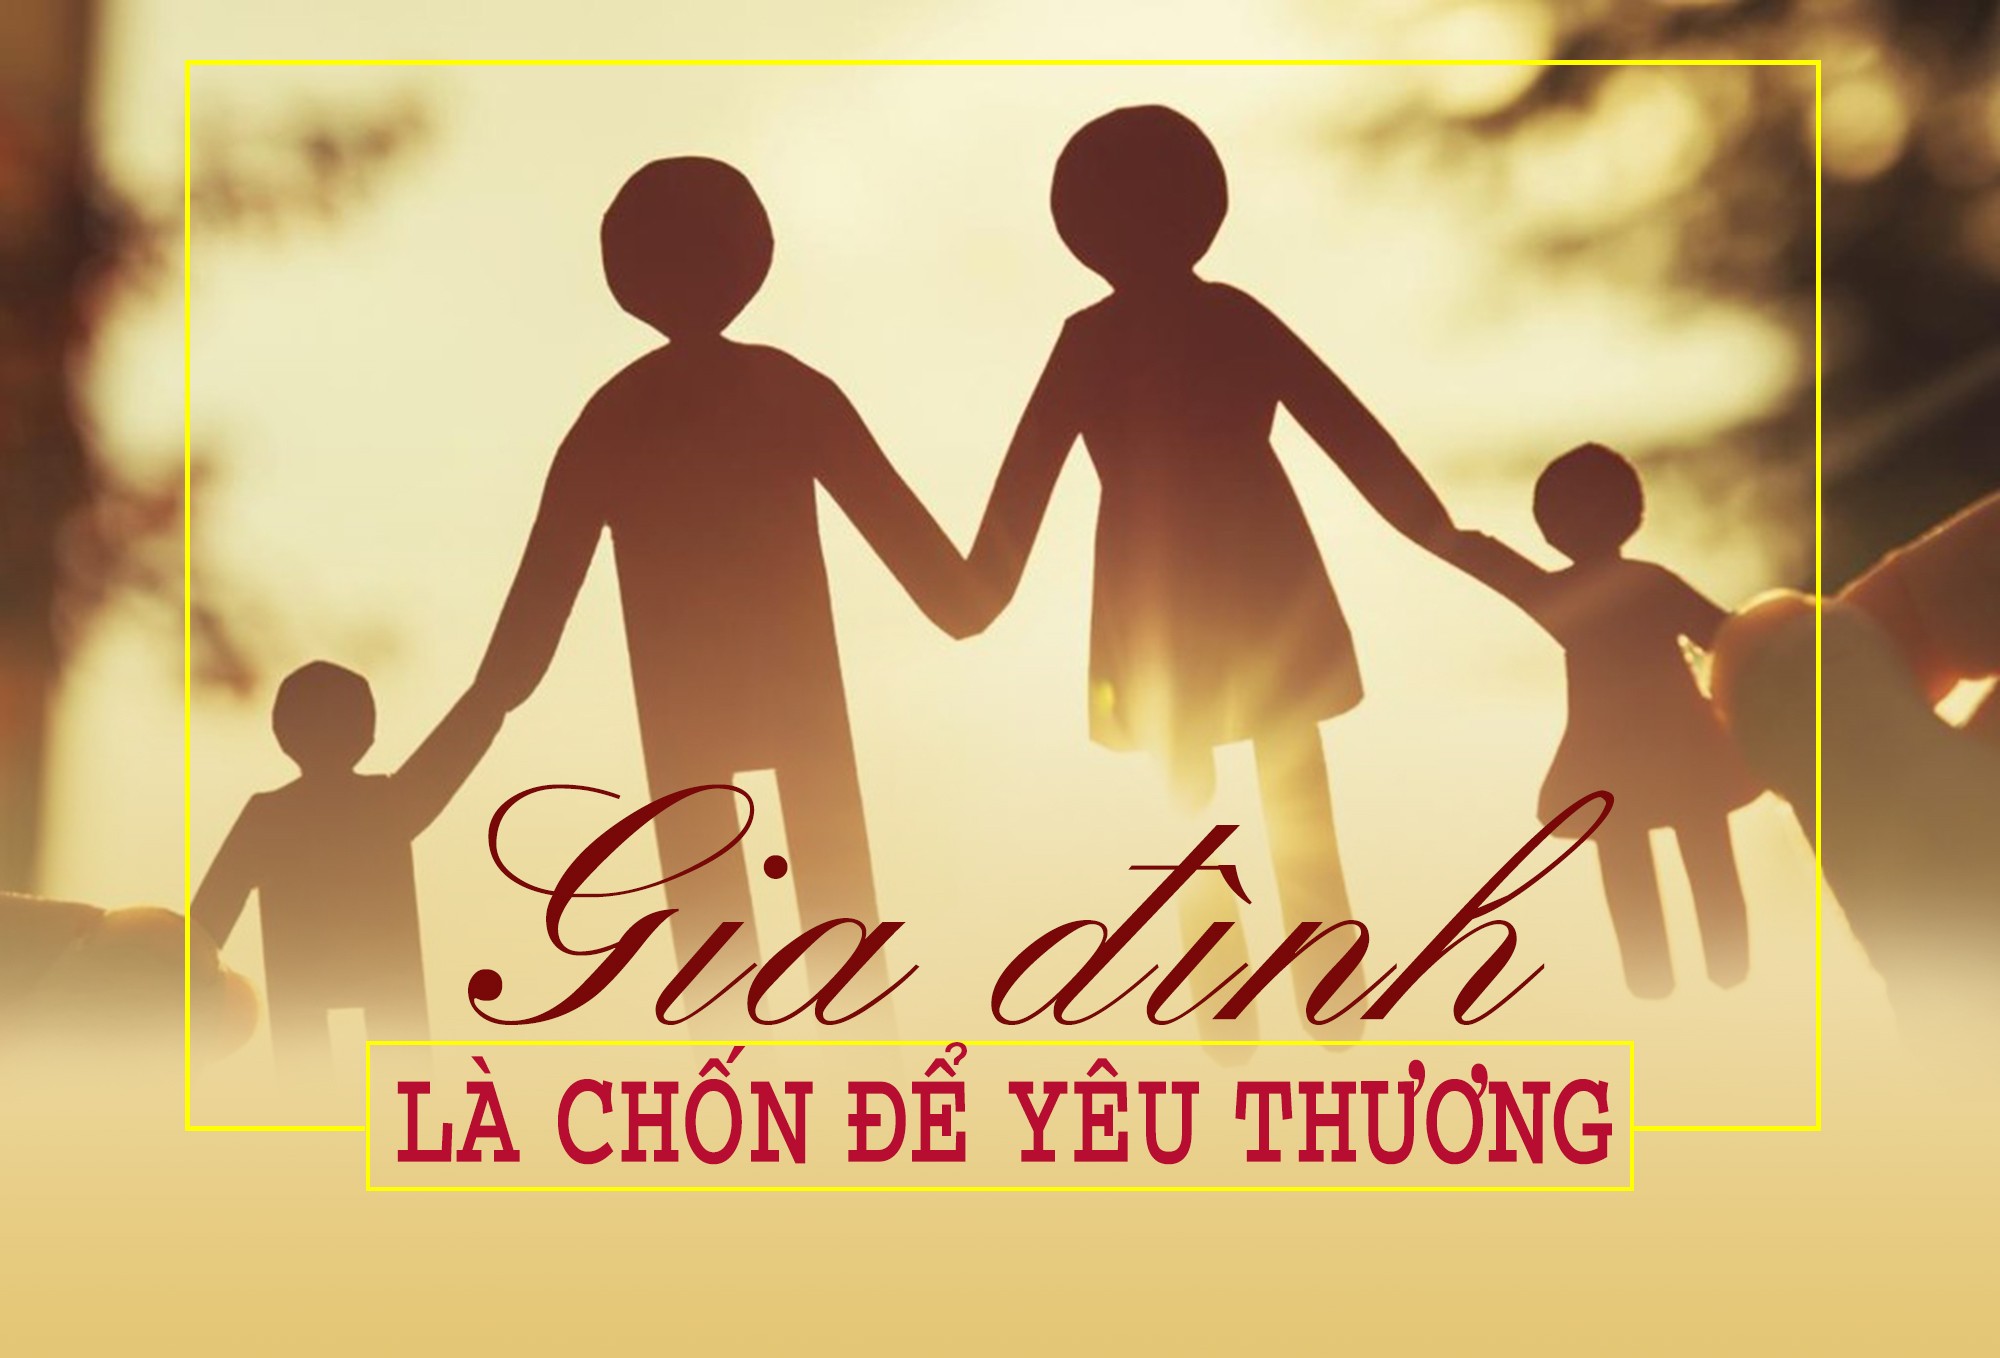 gia-dinh-la-chon-de-yeu-thuong-songkhoeplusvn-1639442331.jpg